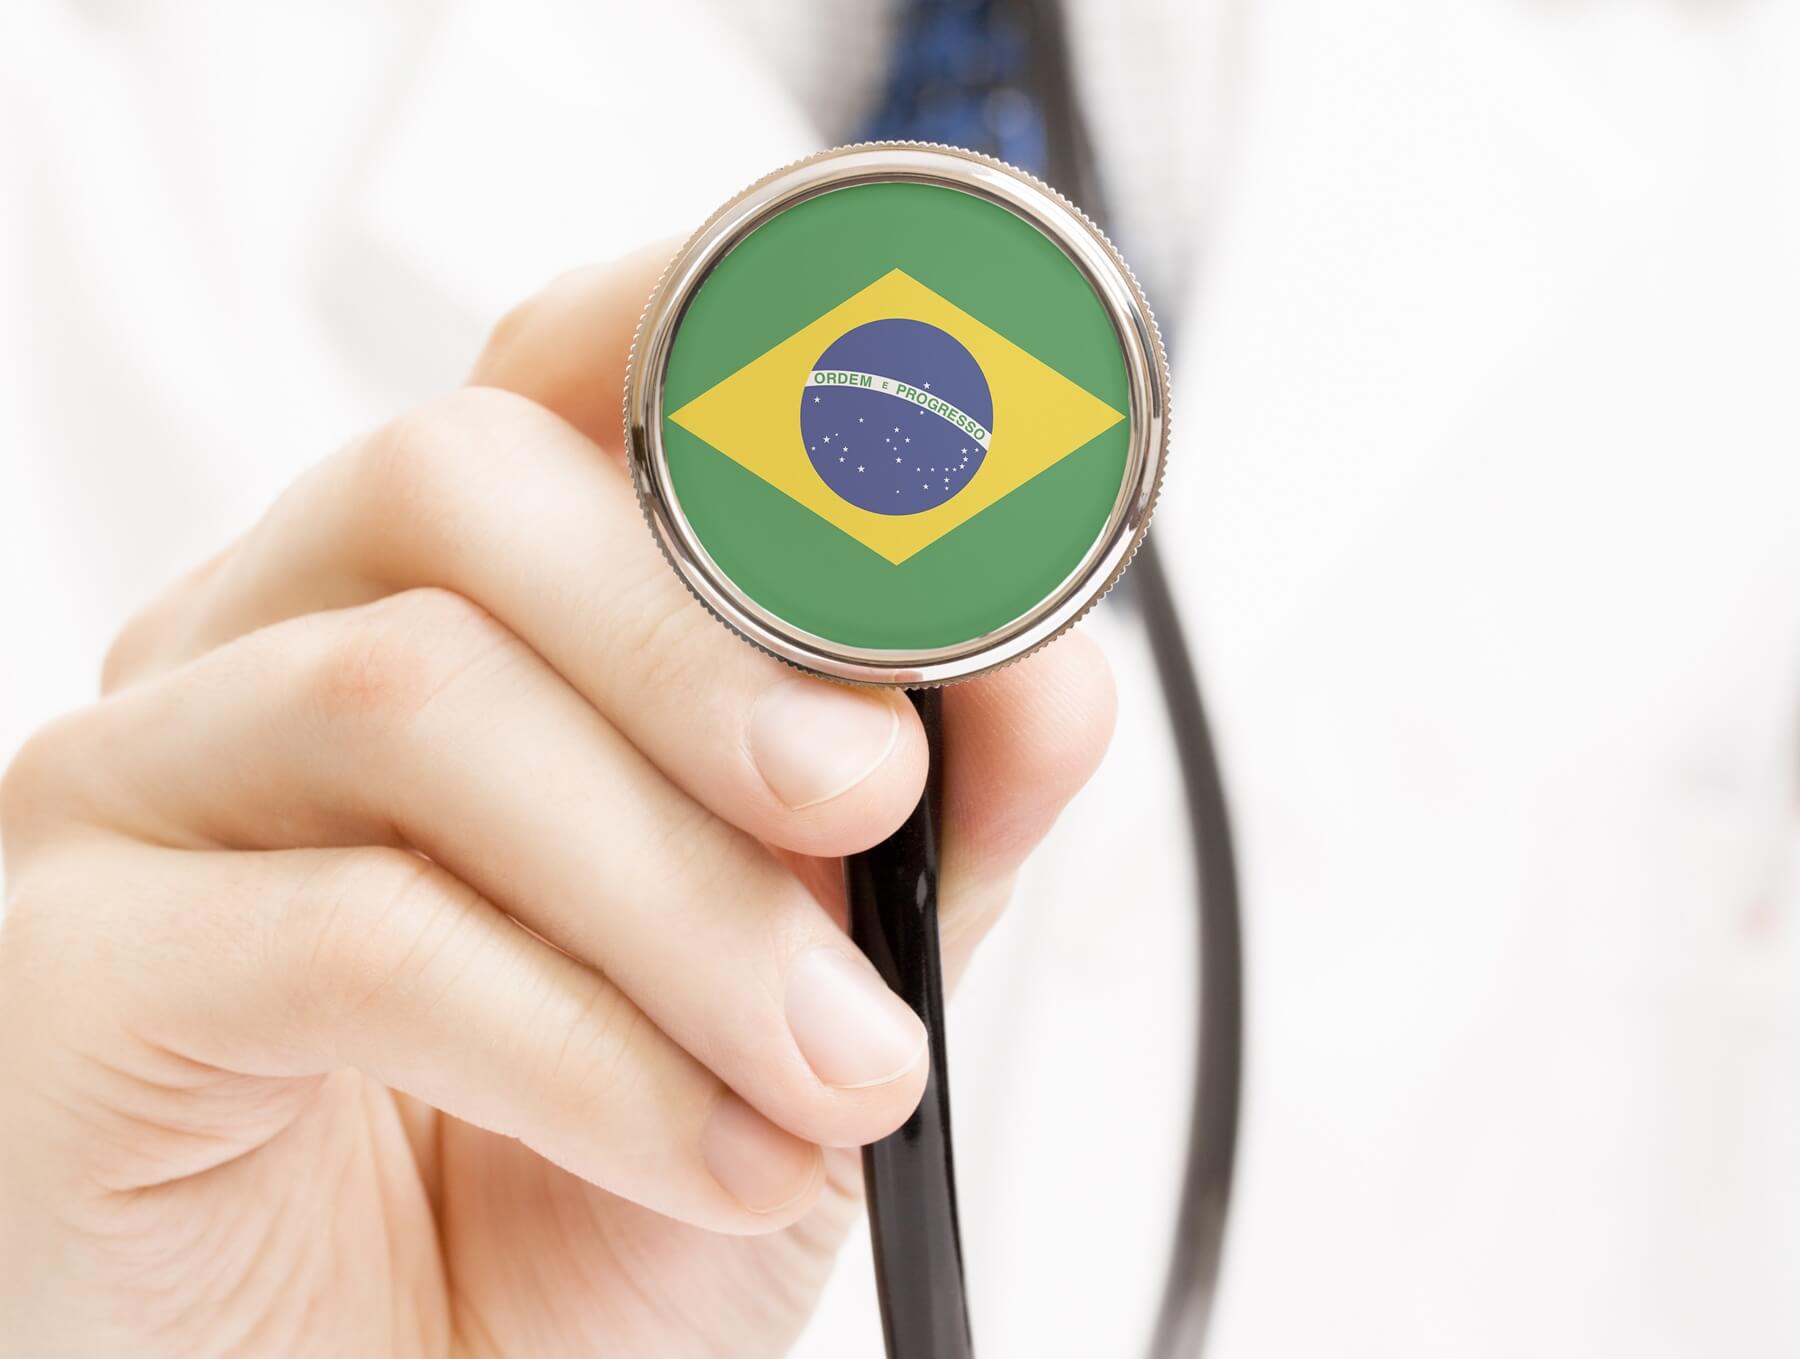 Soins de santé au Brésil